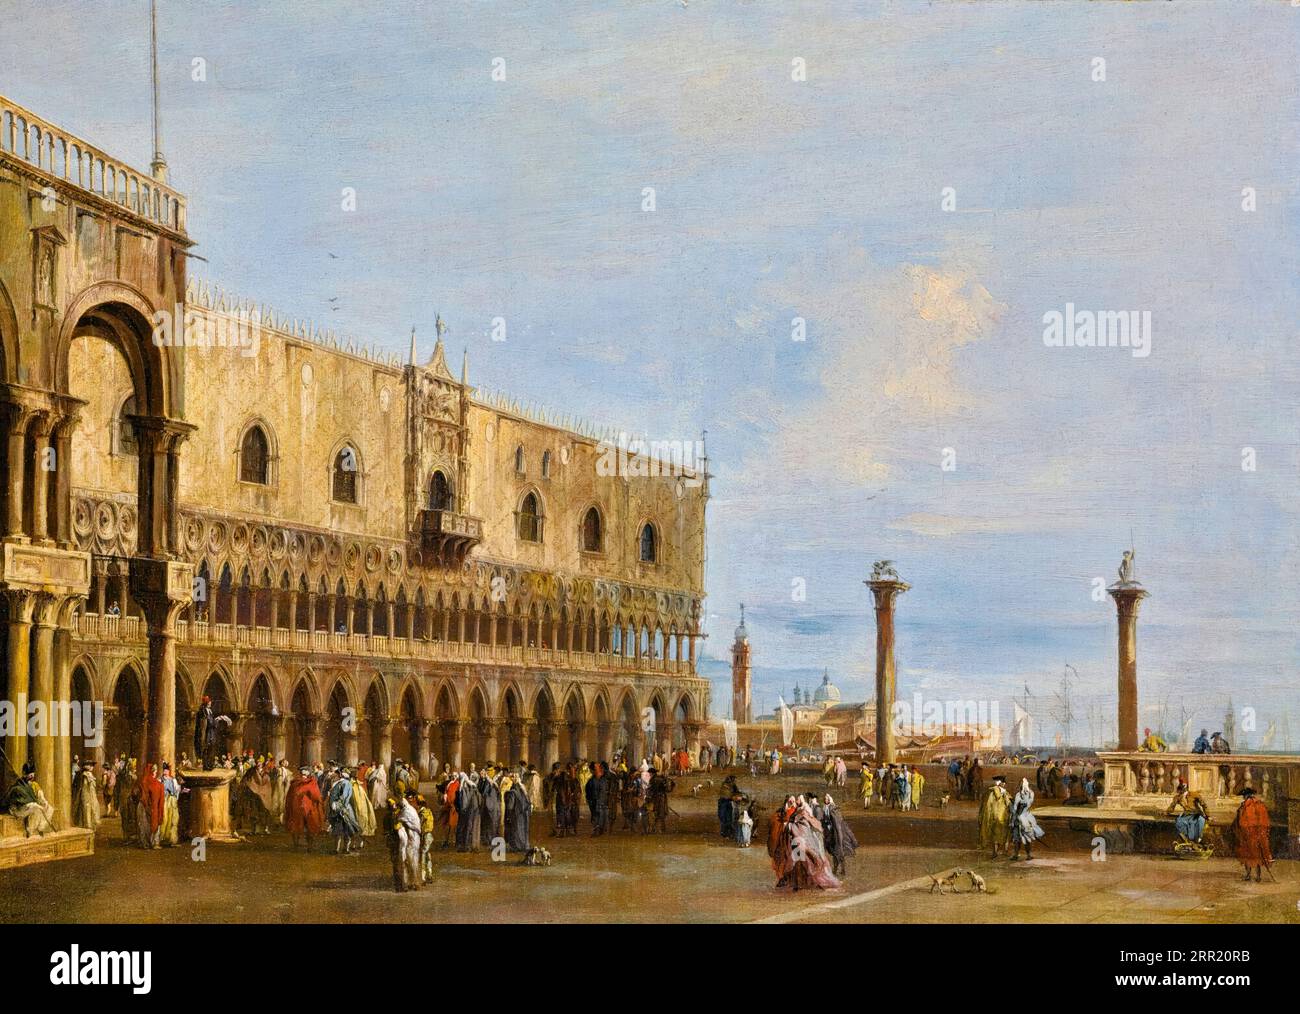 Francesco Guardi, Venise, Une vue de la Piazzetta vers le sud avec le Palazzo Ducale, peinture à l'huile sur toile, 1755-1760 Banque D'Images